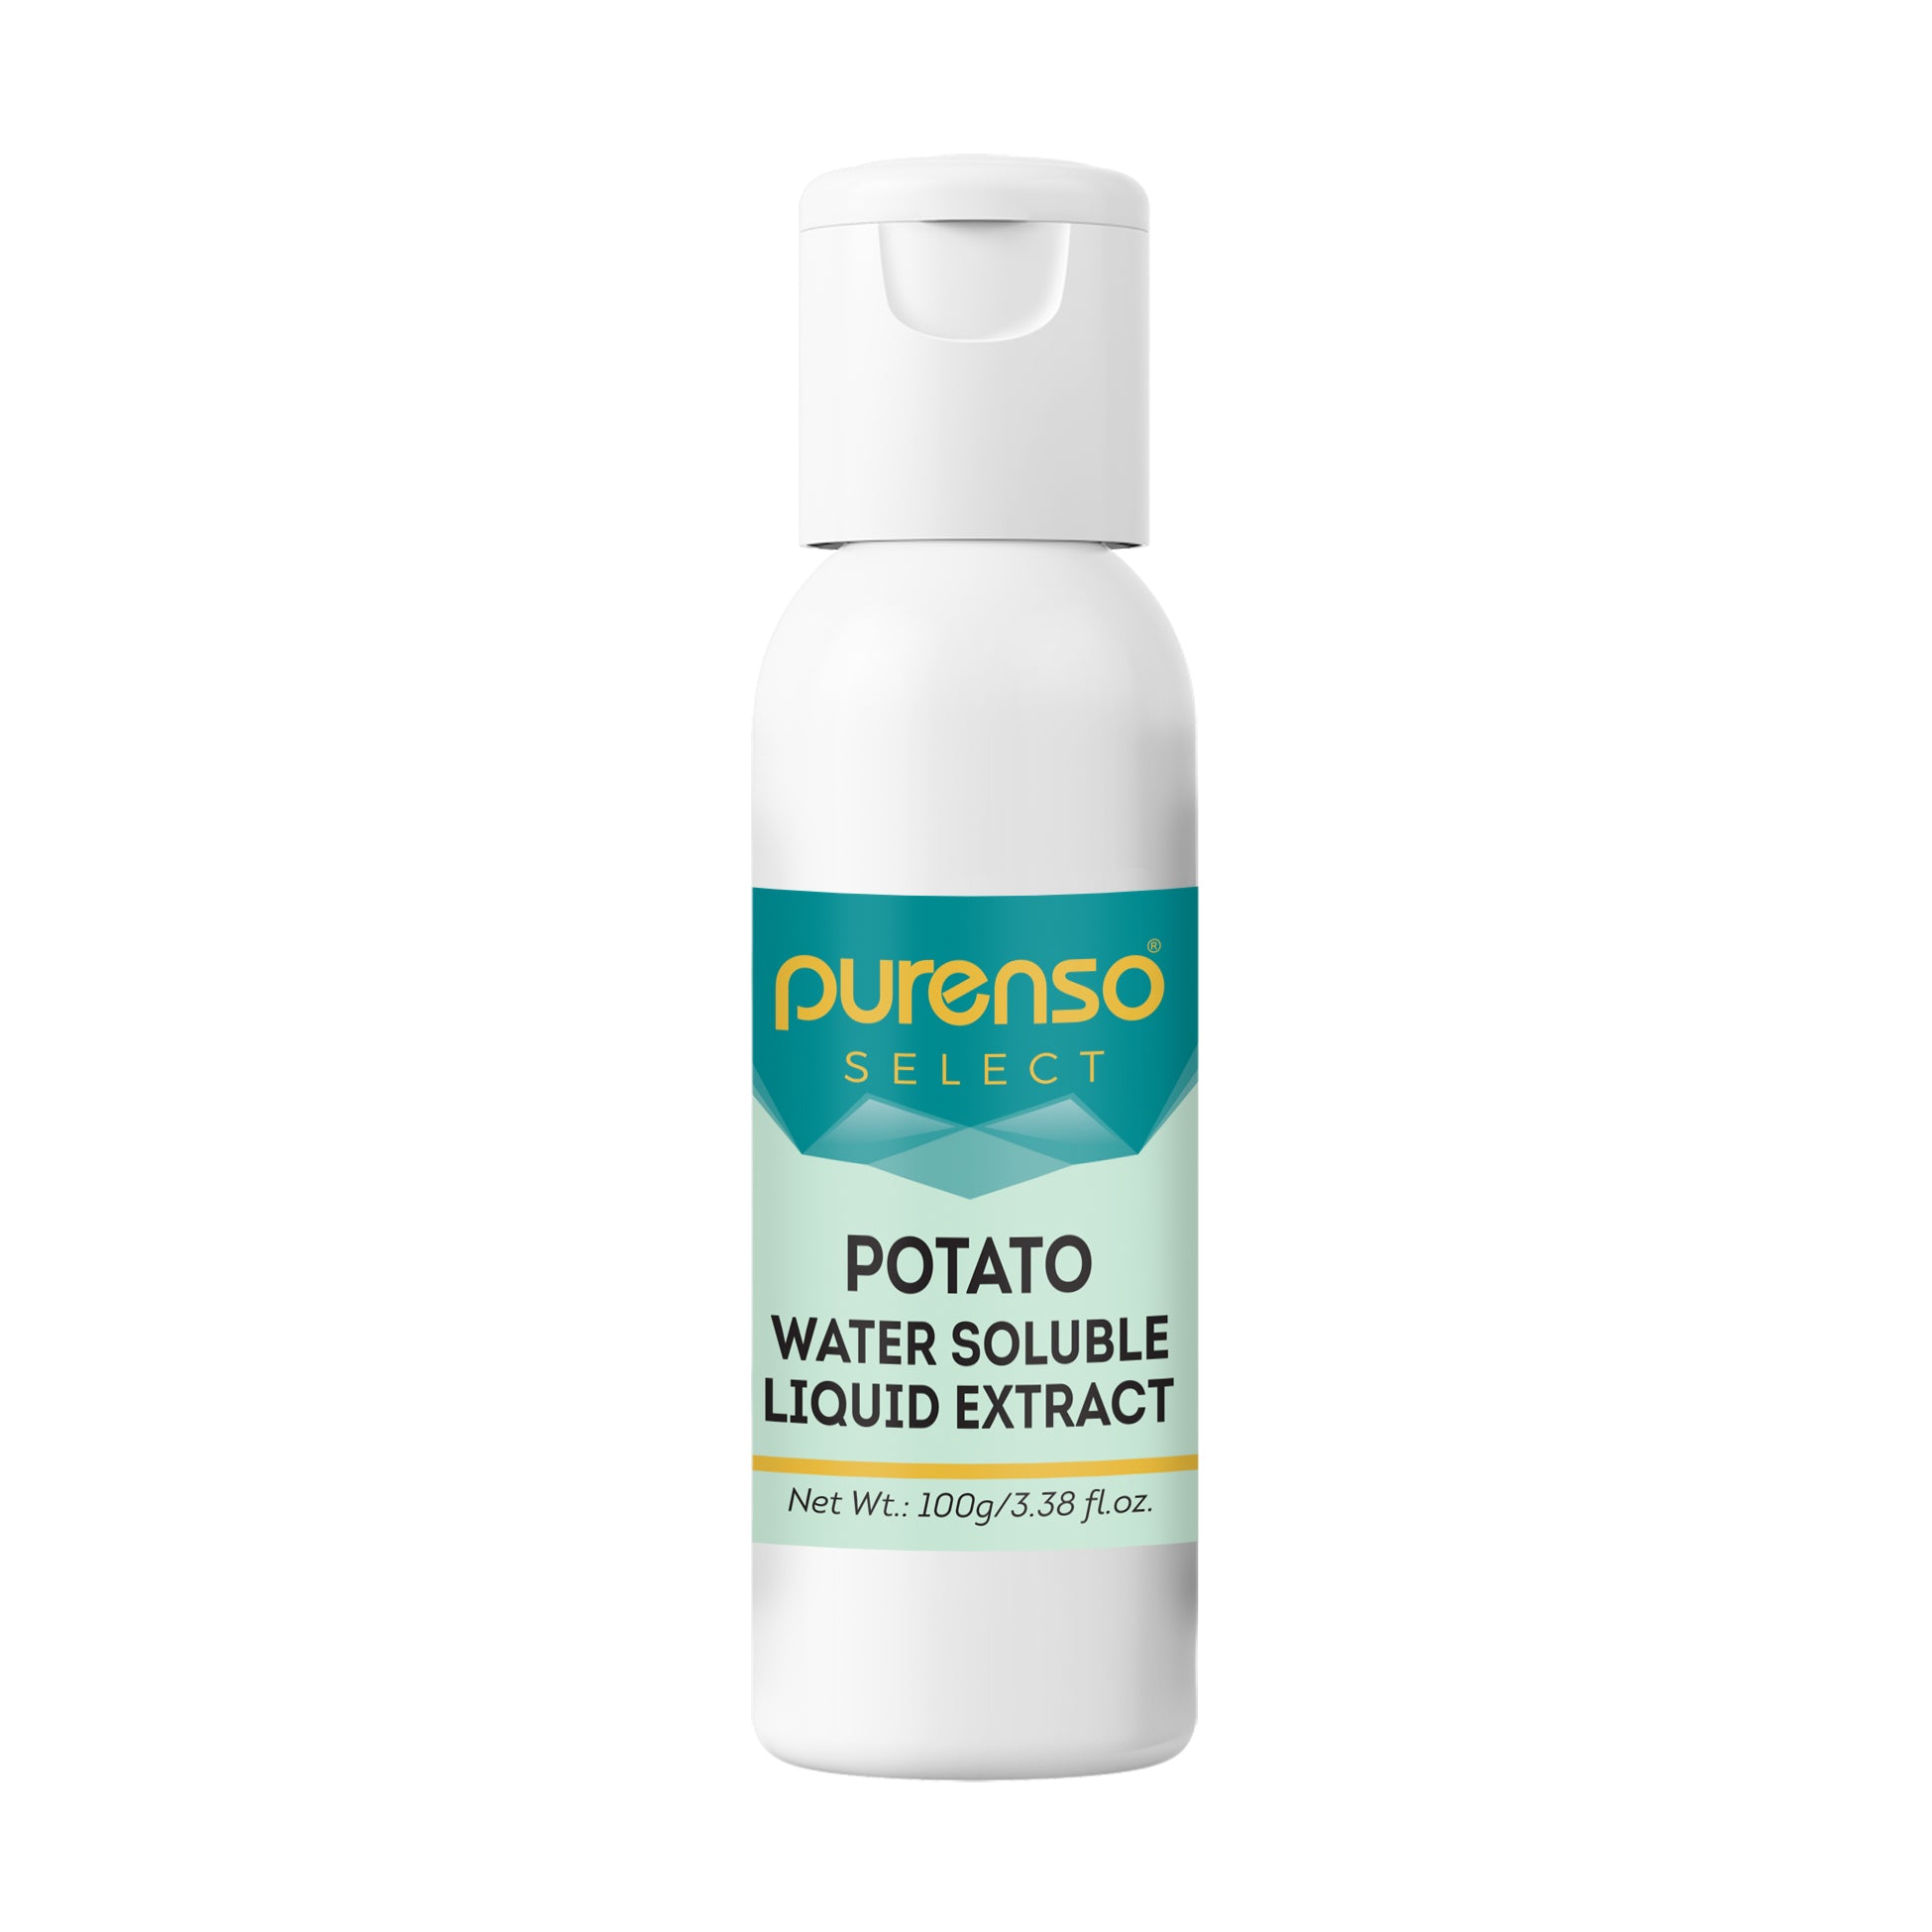 Potato Liquid Extract - Water Soluble